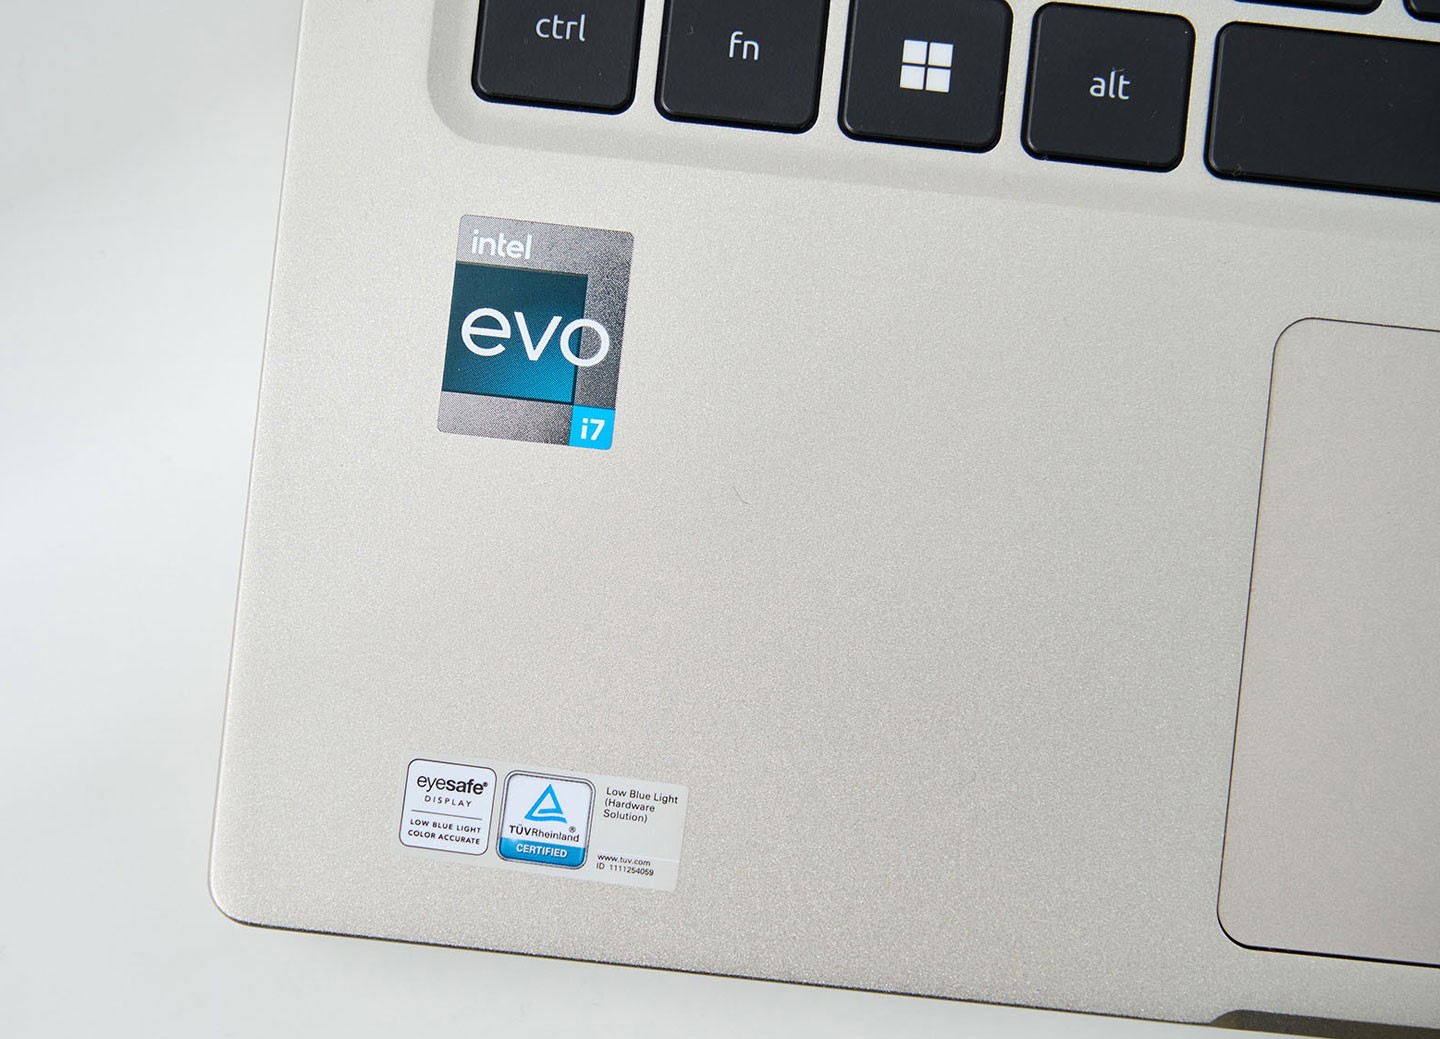 這張貼紙示了 Acer Swift 3 OLED 是一台通過 Intel Evo 平台認的電，下方還可以看到其他眼認的標章。